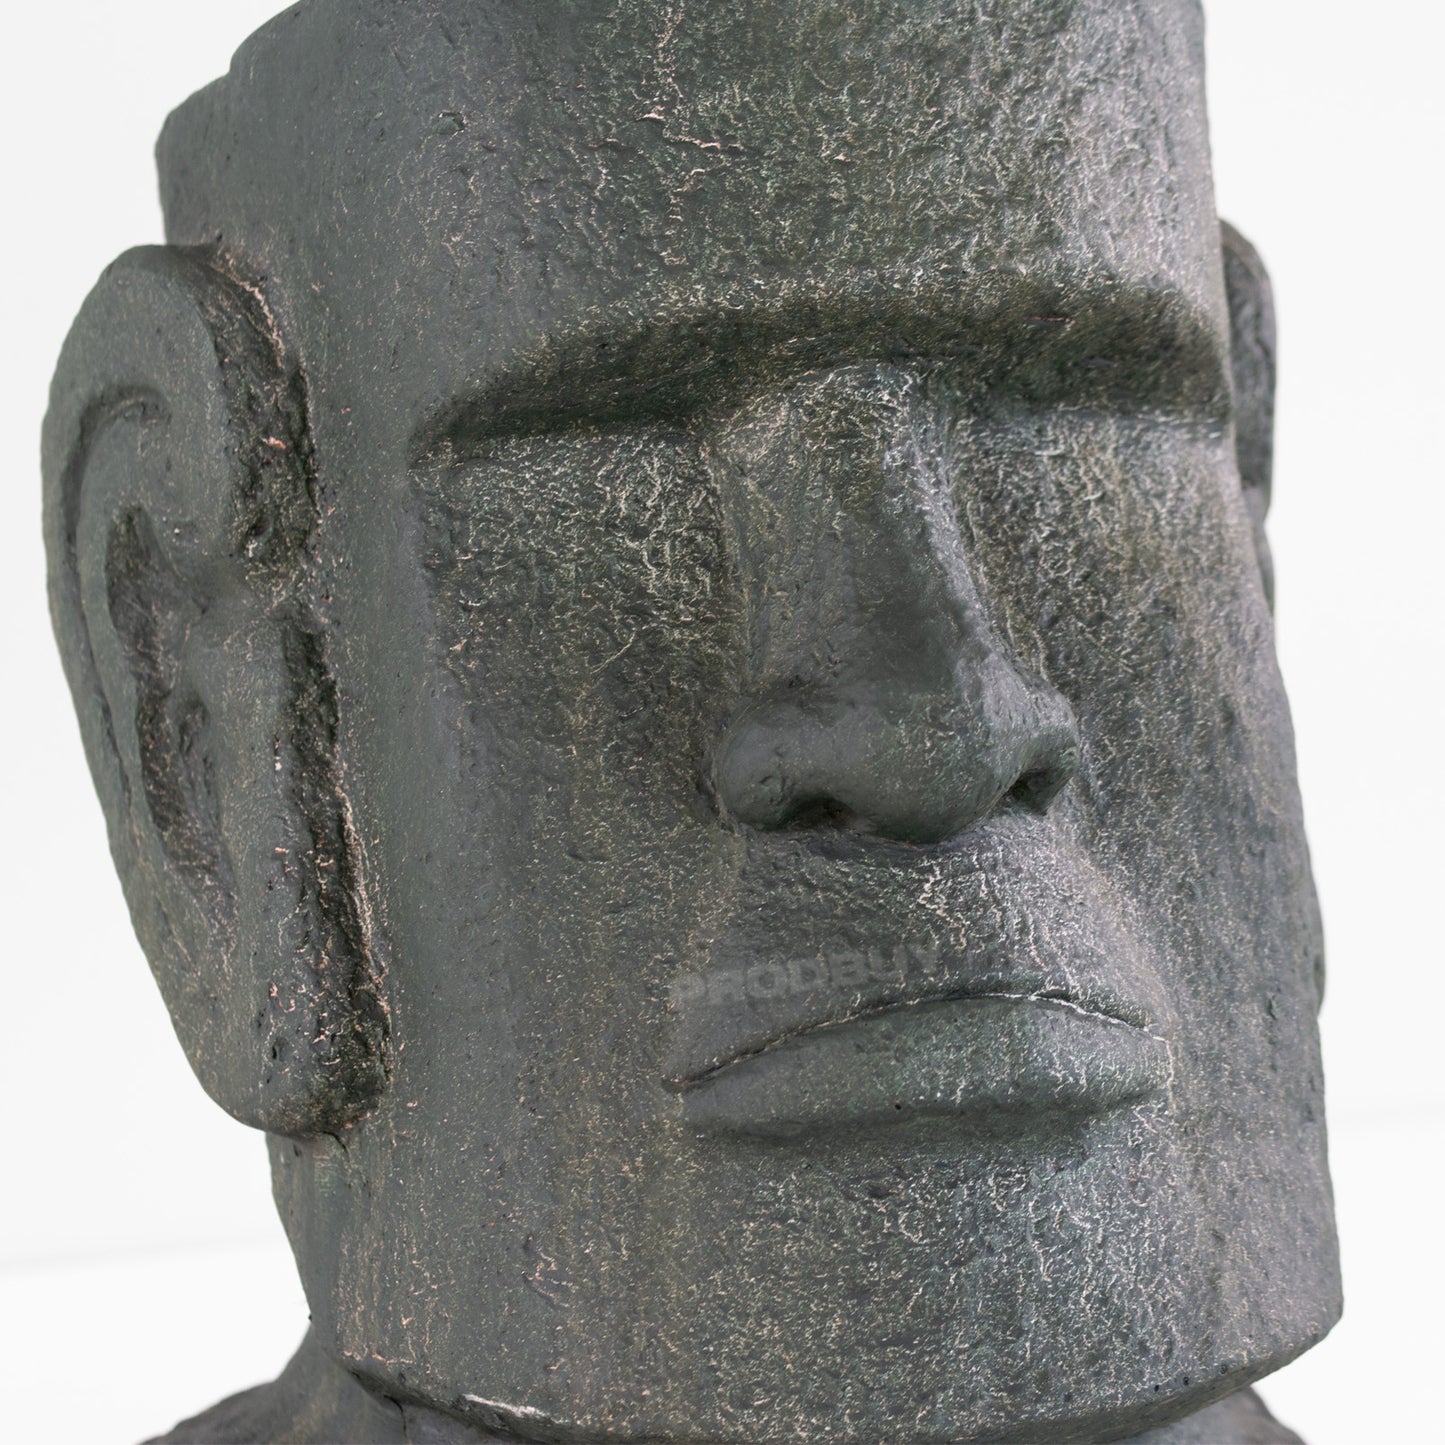 42cm Resin Easter Island Moai Head Garden Statue Outdoor Sculpture Ornament Decking